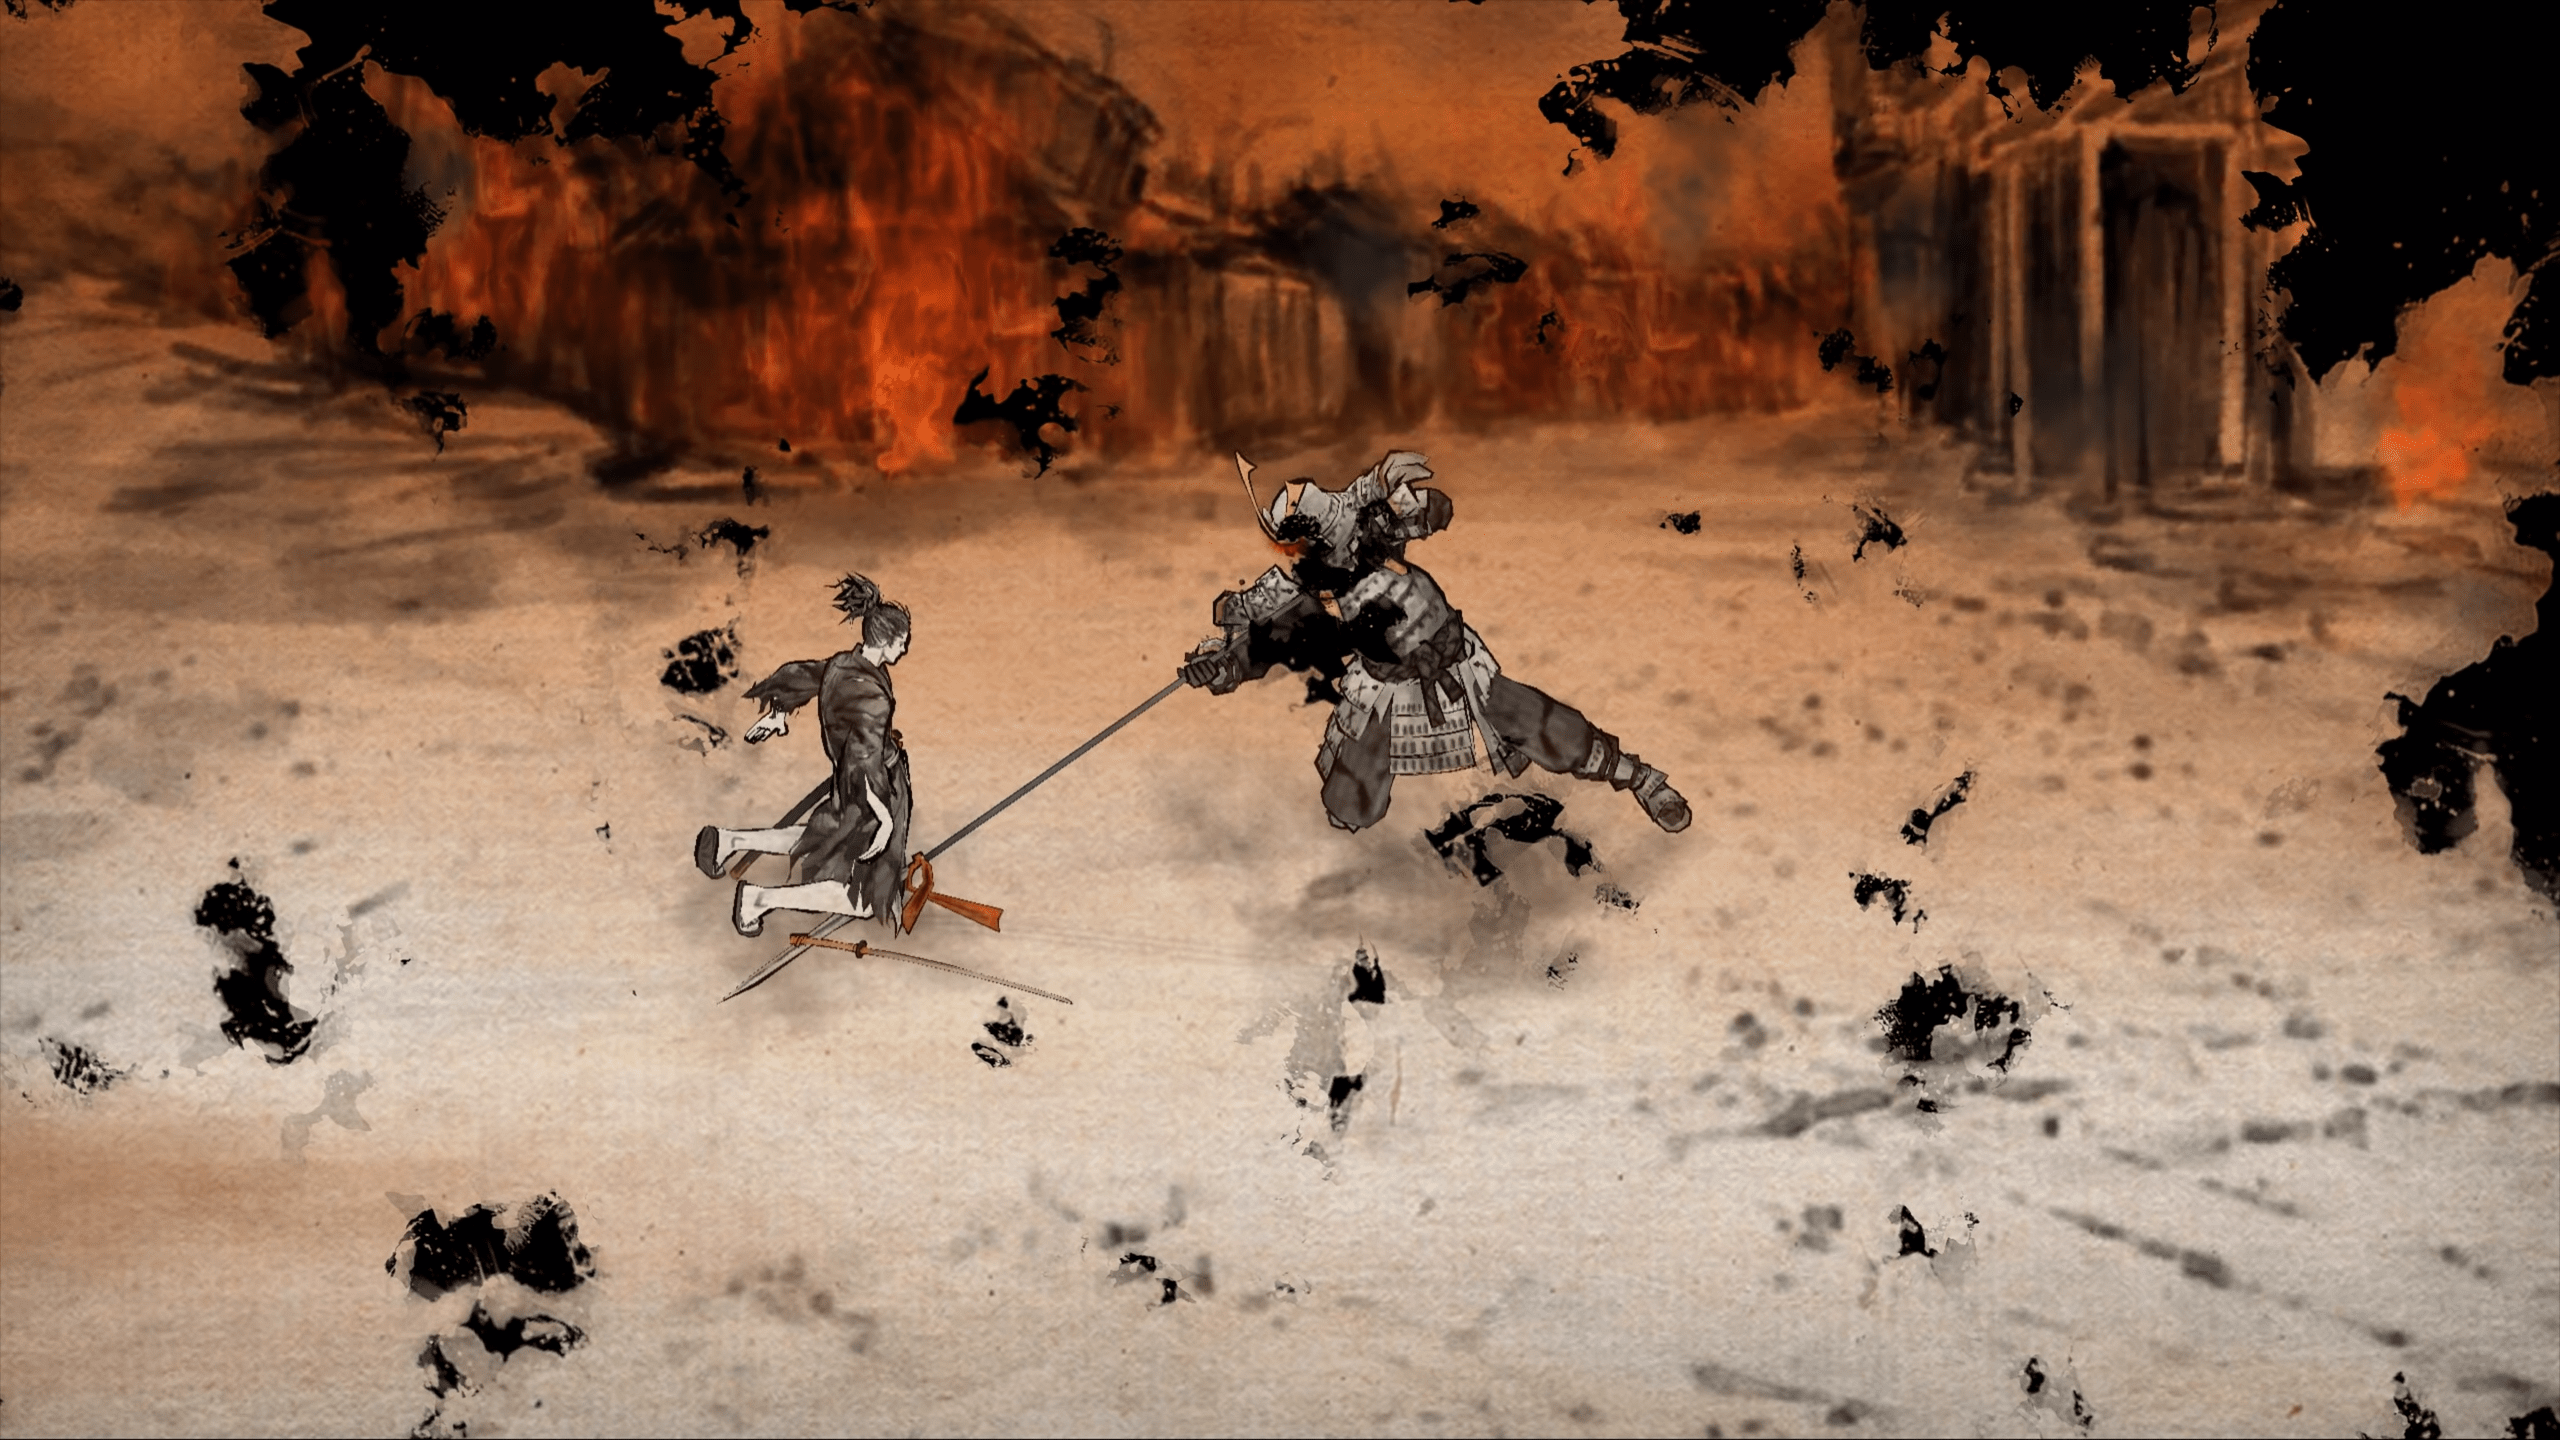 Ronin_ The Last Samurai gameplay